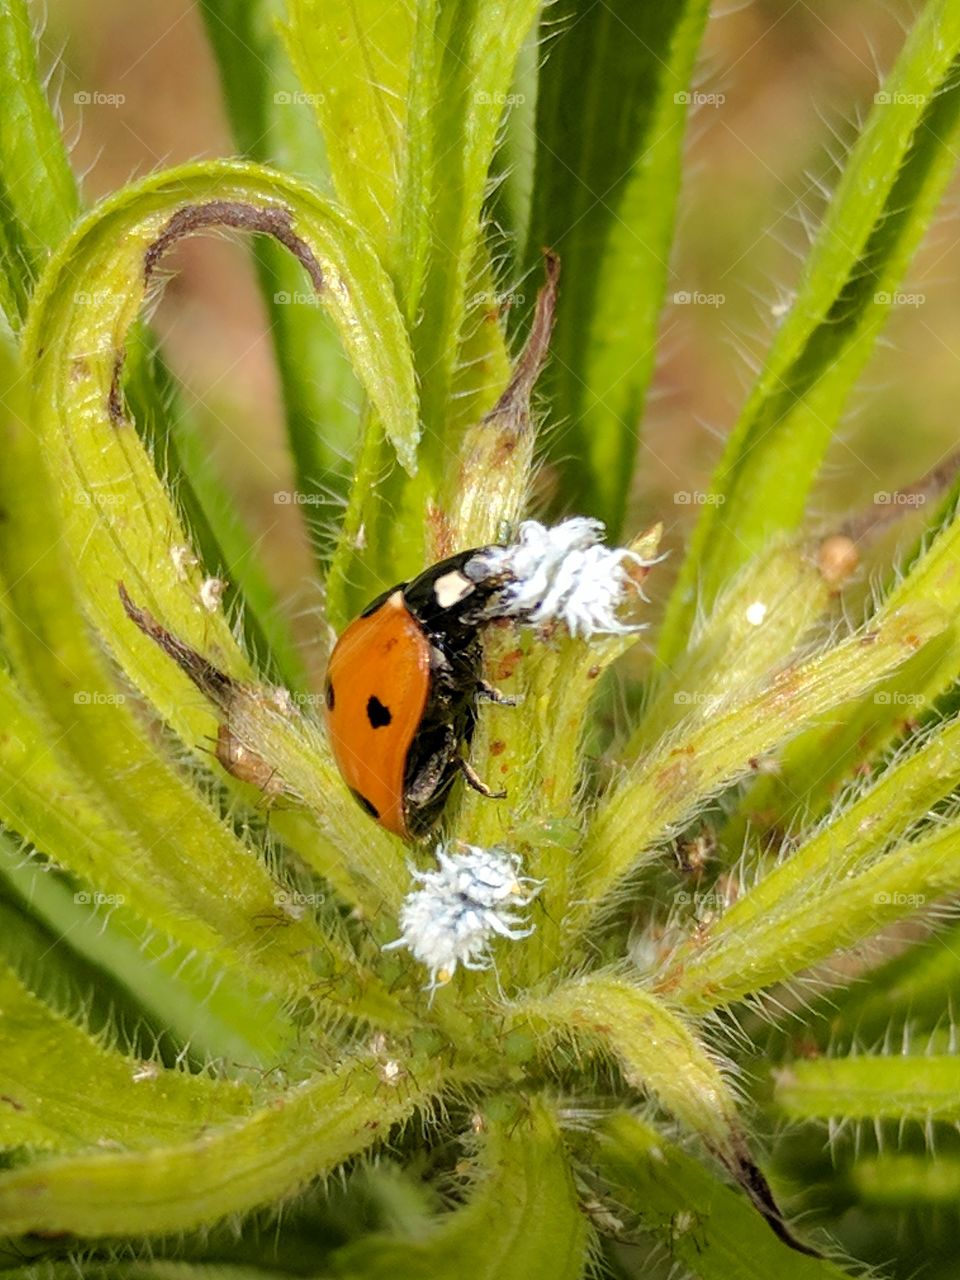 a ladybug taking care of the mealybugs